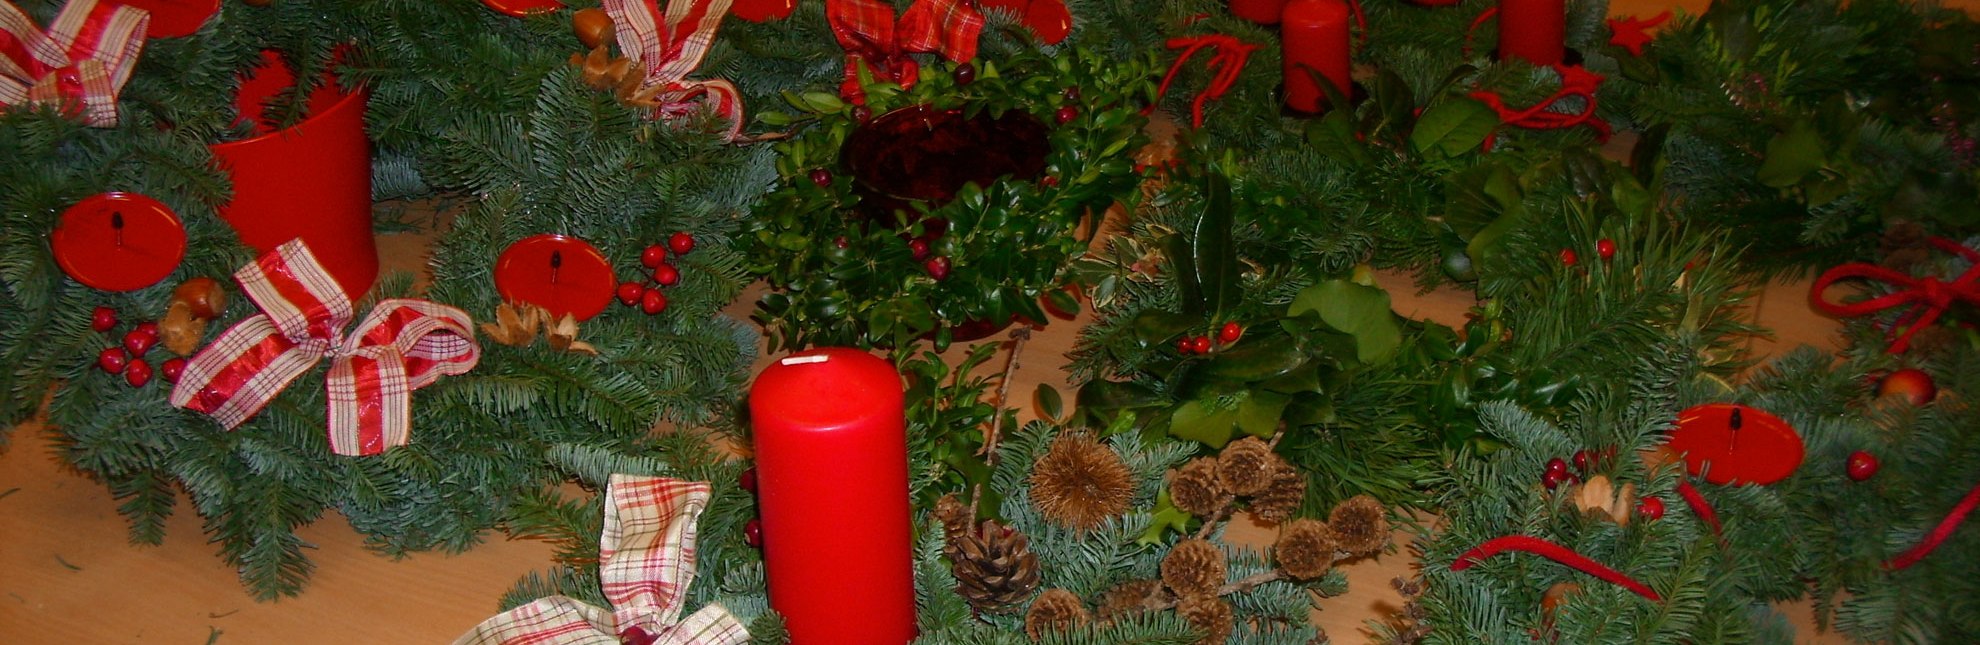 Weihnachtskranz binden mit der WalderlebnisWelt, © WalderlebnisWelt